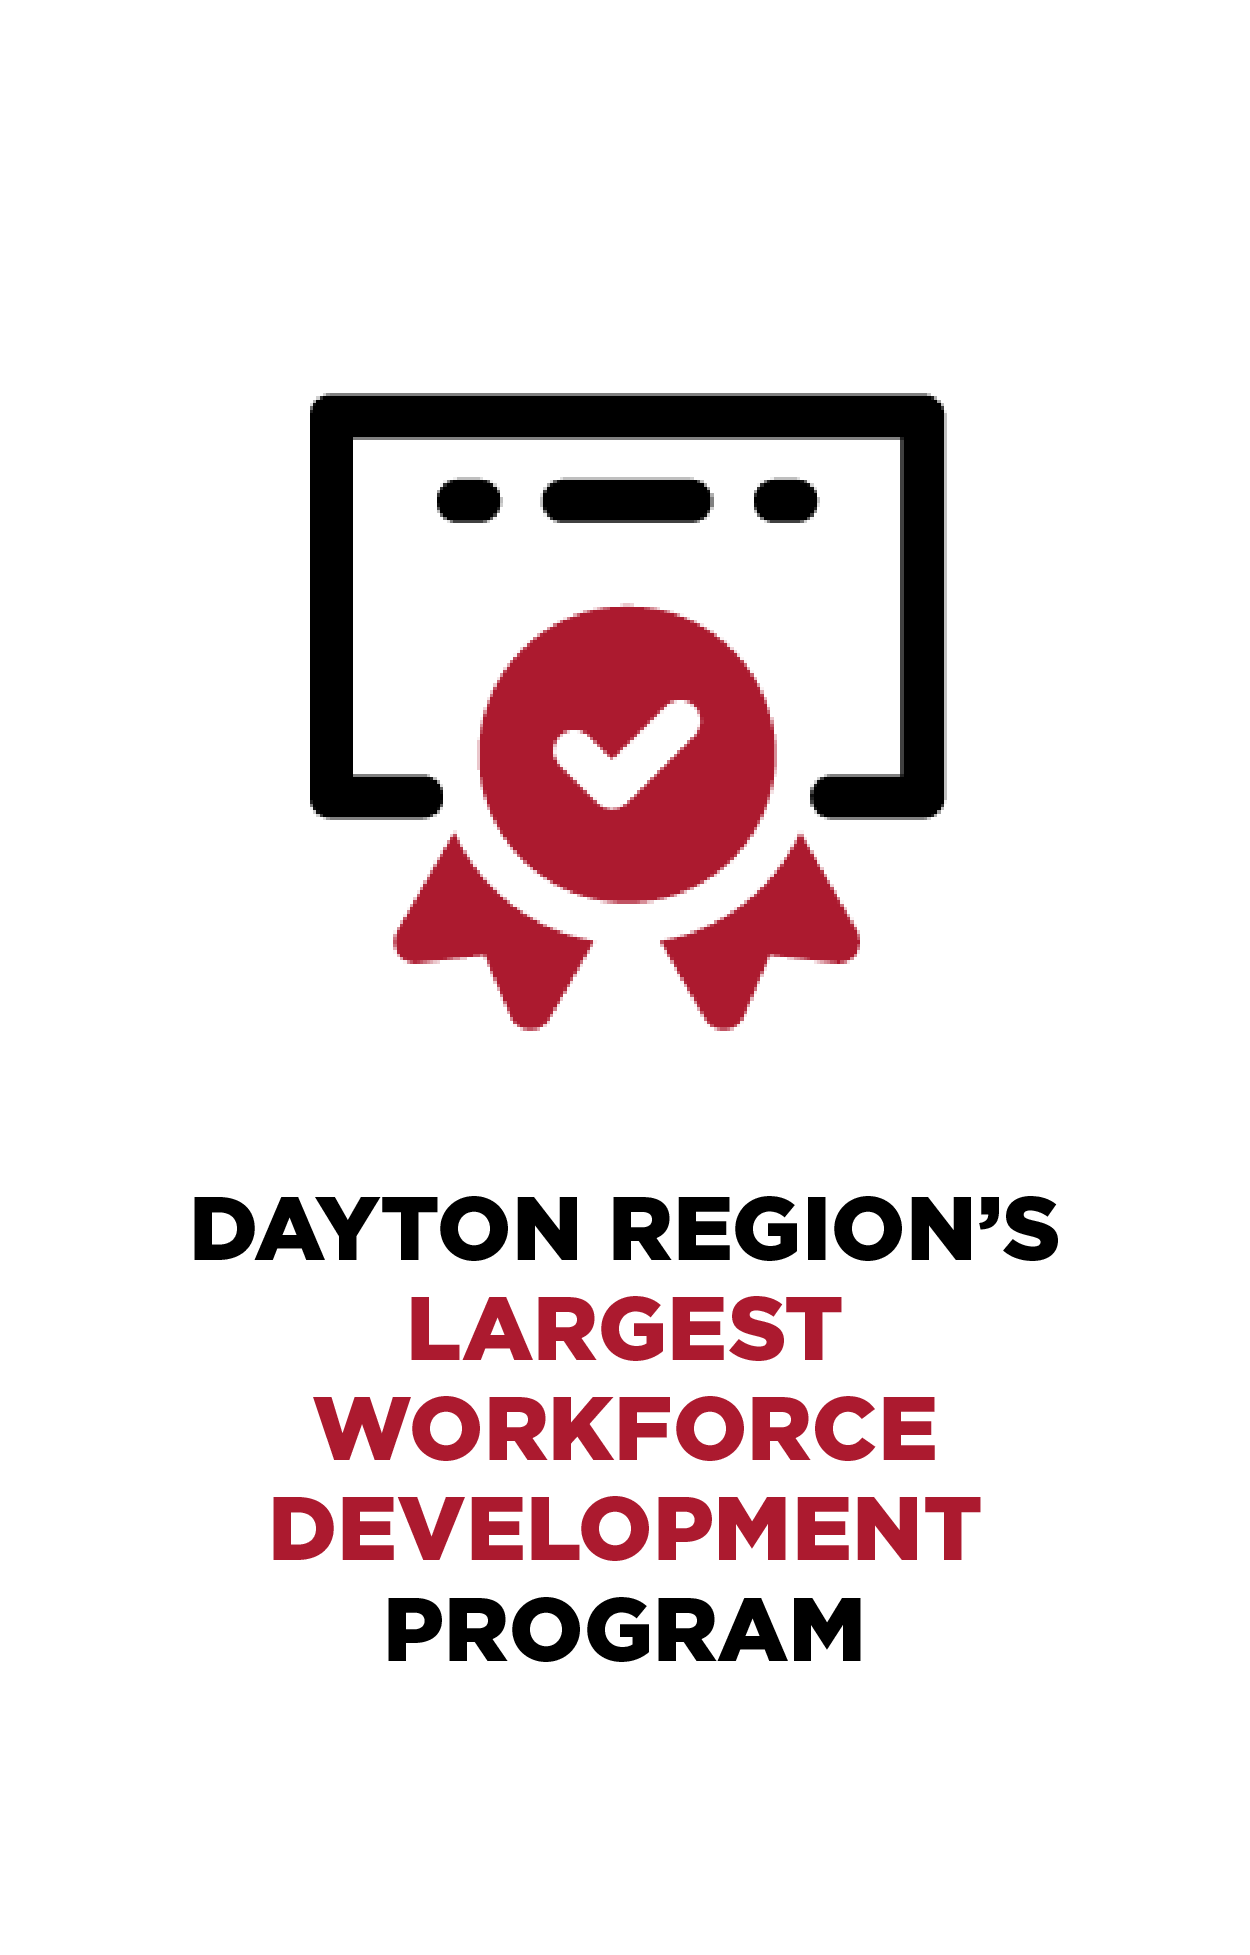 Dayton Region’s Largest Workforce Development Program